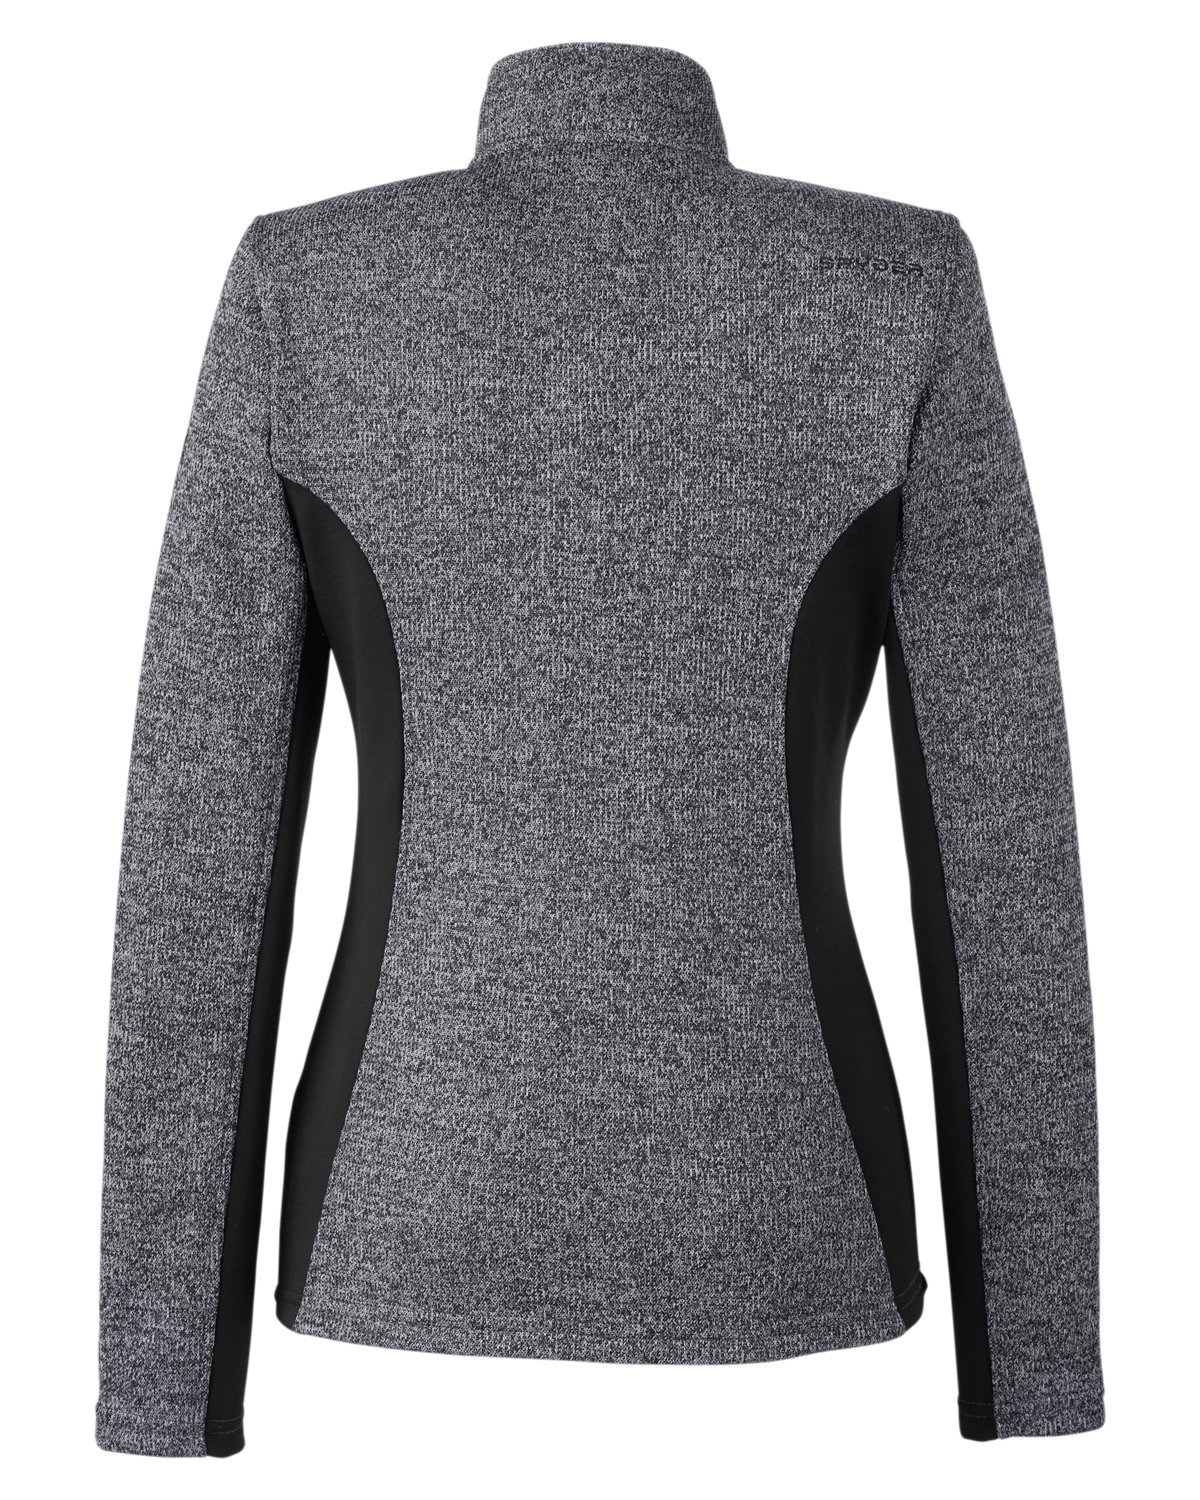 Spyder Ladies' Constant Full-Zip Sweater Fleece Jacket | alphabroder Canada